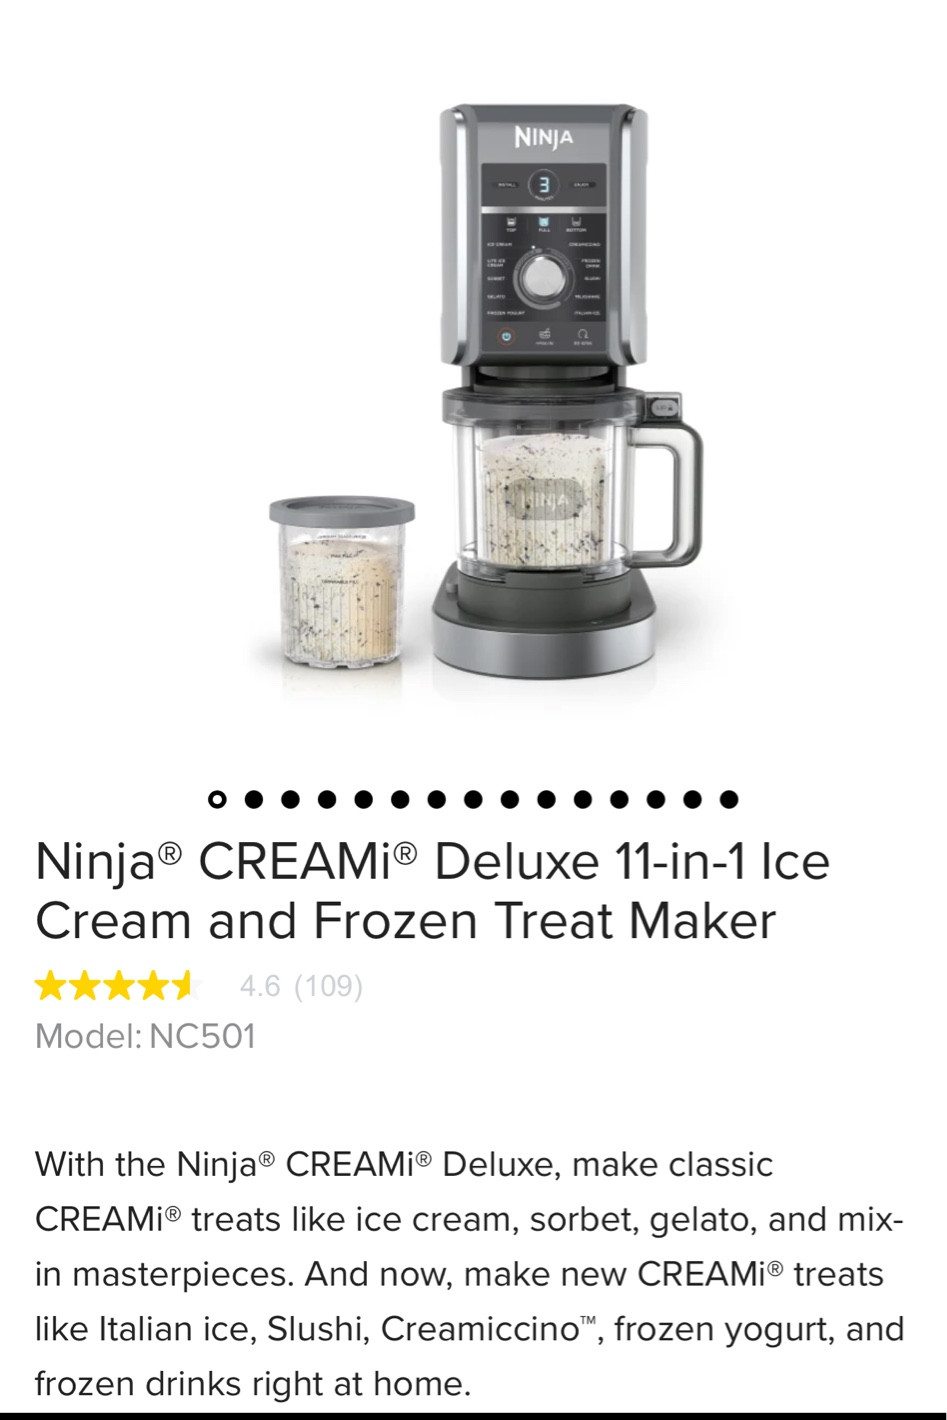 New! Ninja CREAMi Deluxe 11-in-1 NC501 Ice Cream & Frozen